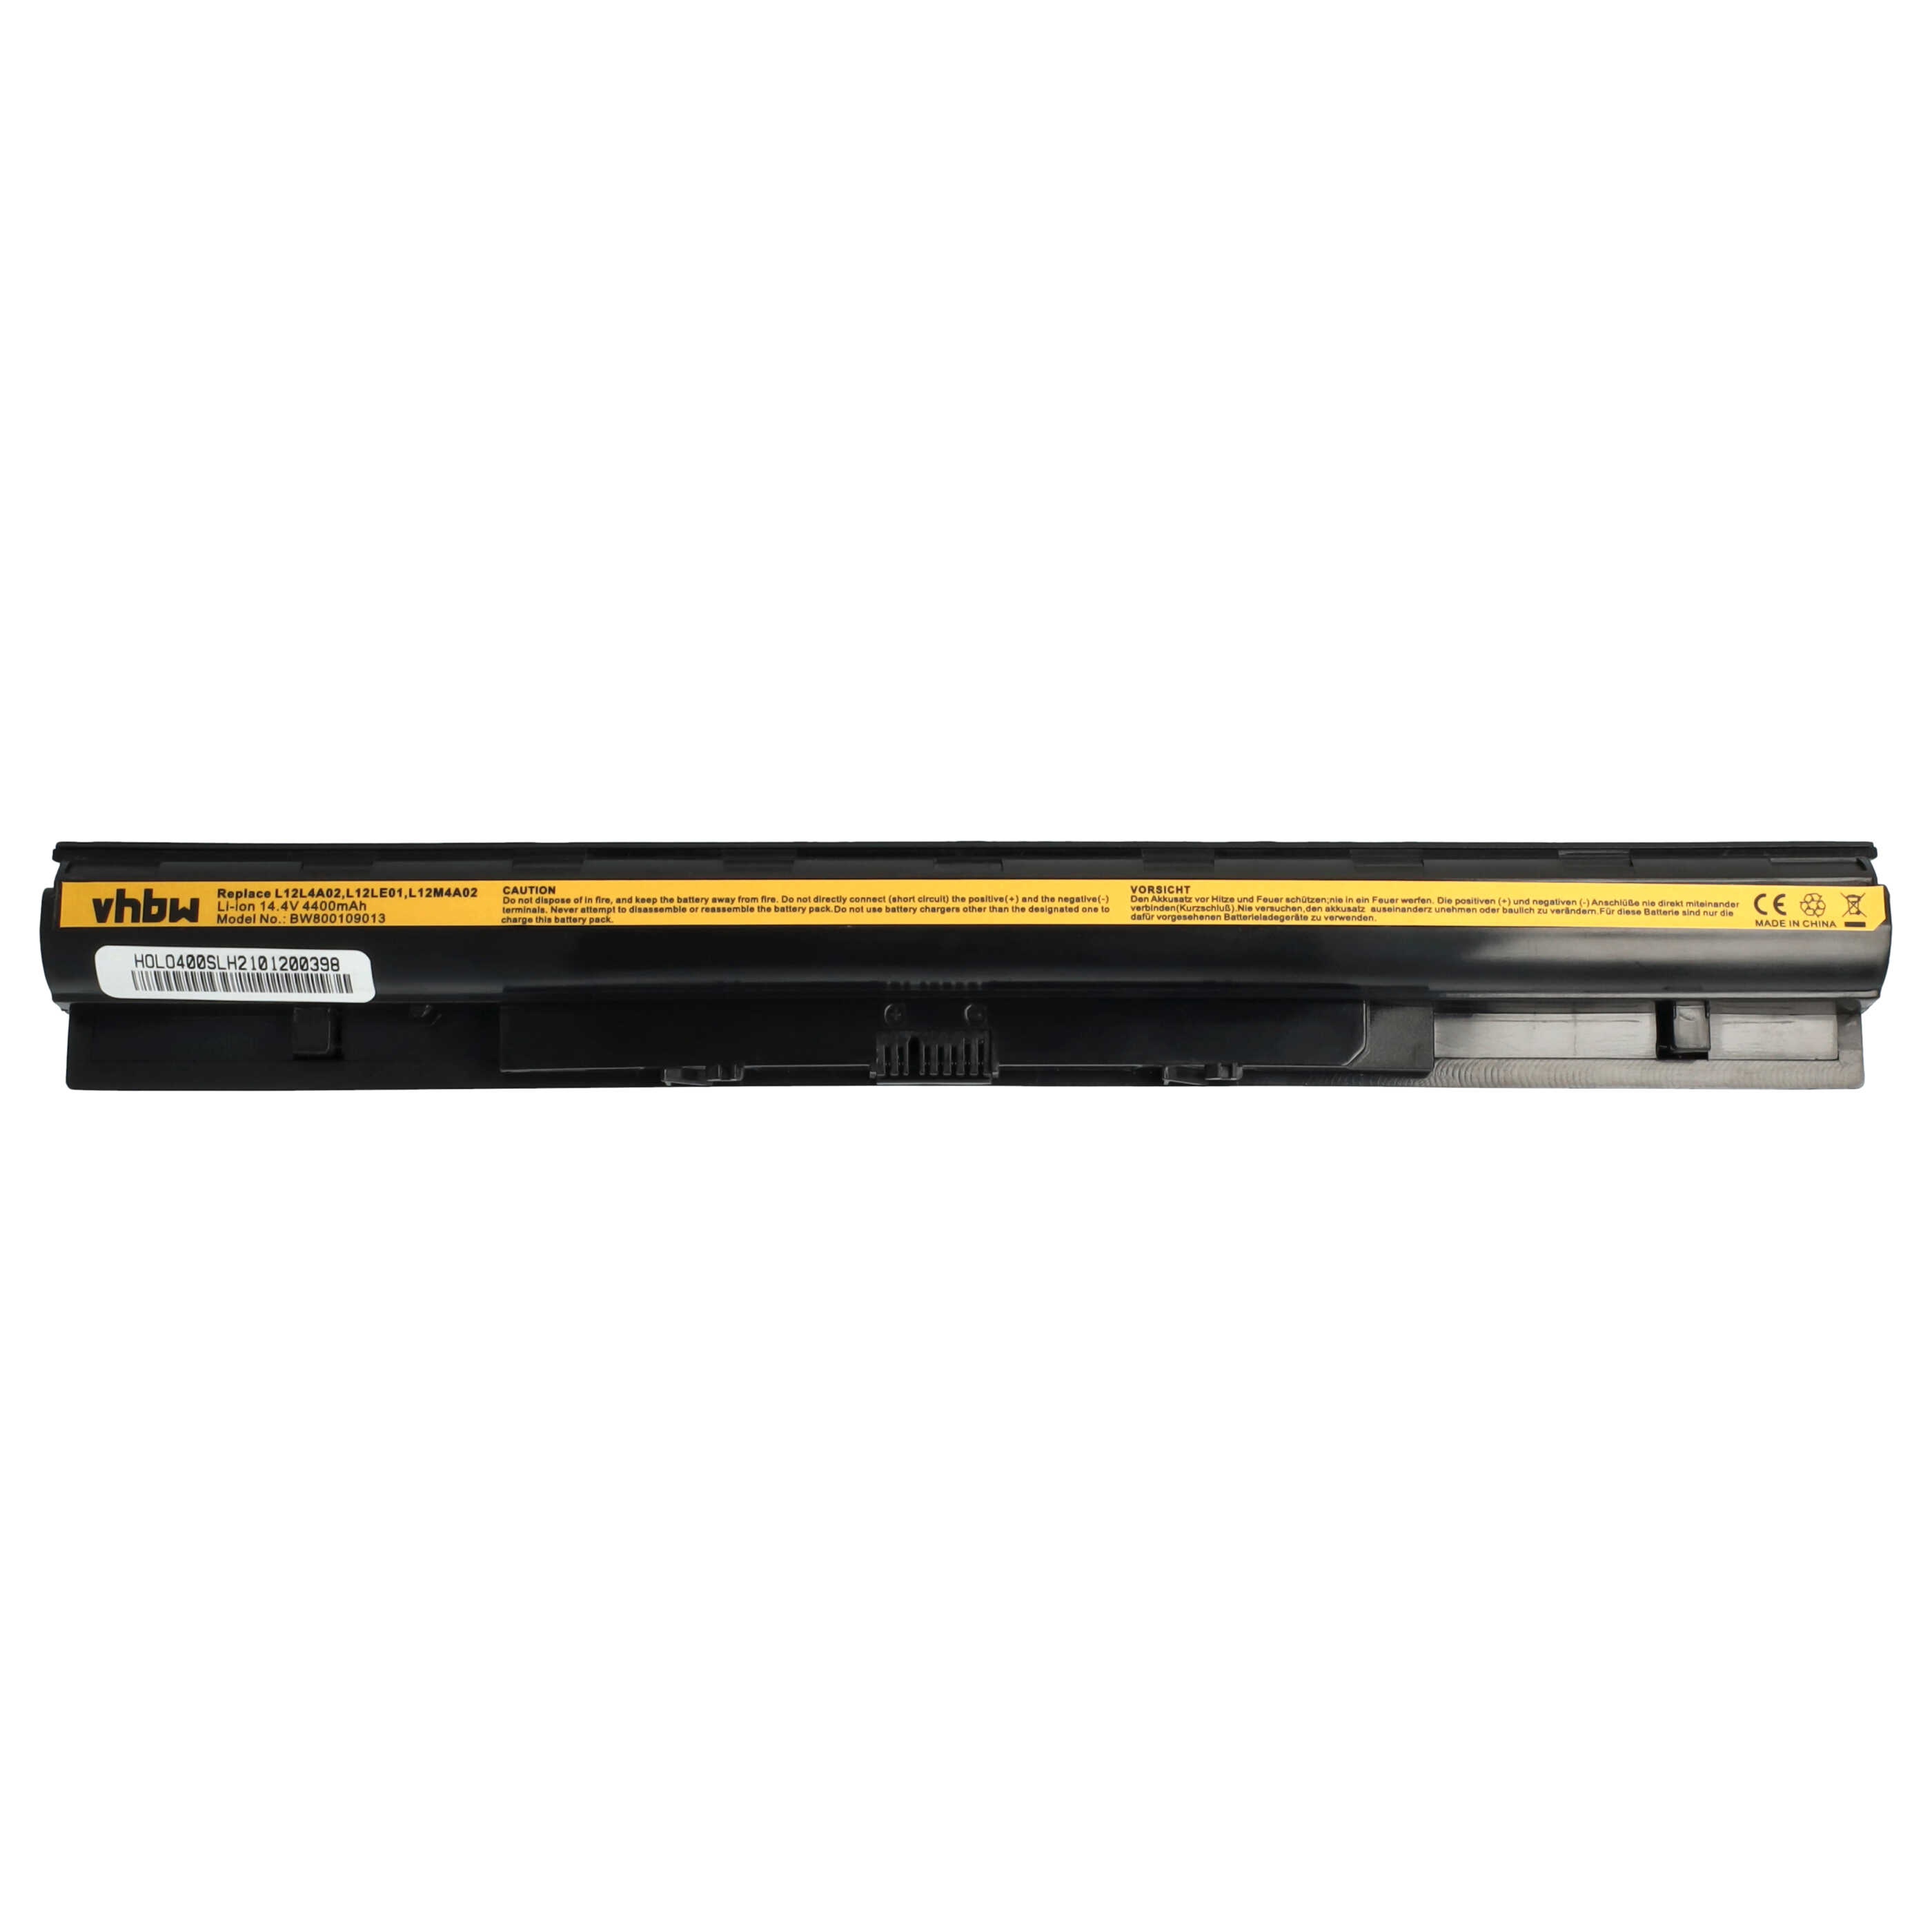 Batteria sostituisce Lenovo 121500171, 121500172, 121500173 per notebook Lenovo - 4400mAh 14,8V Li-Ion nero